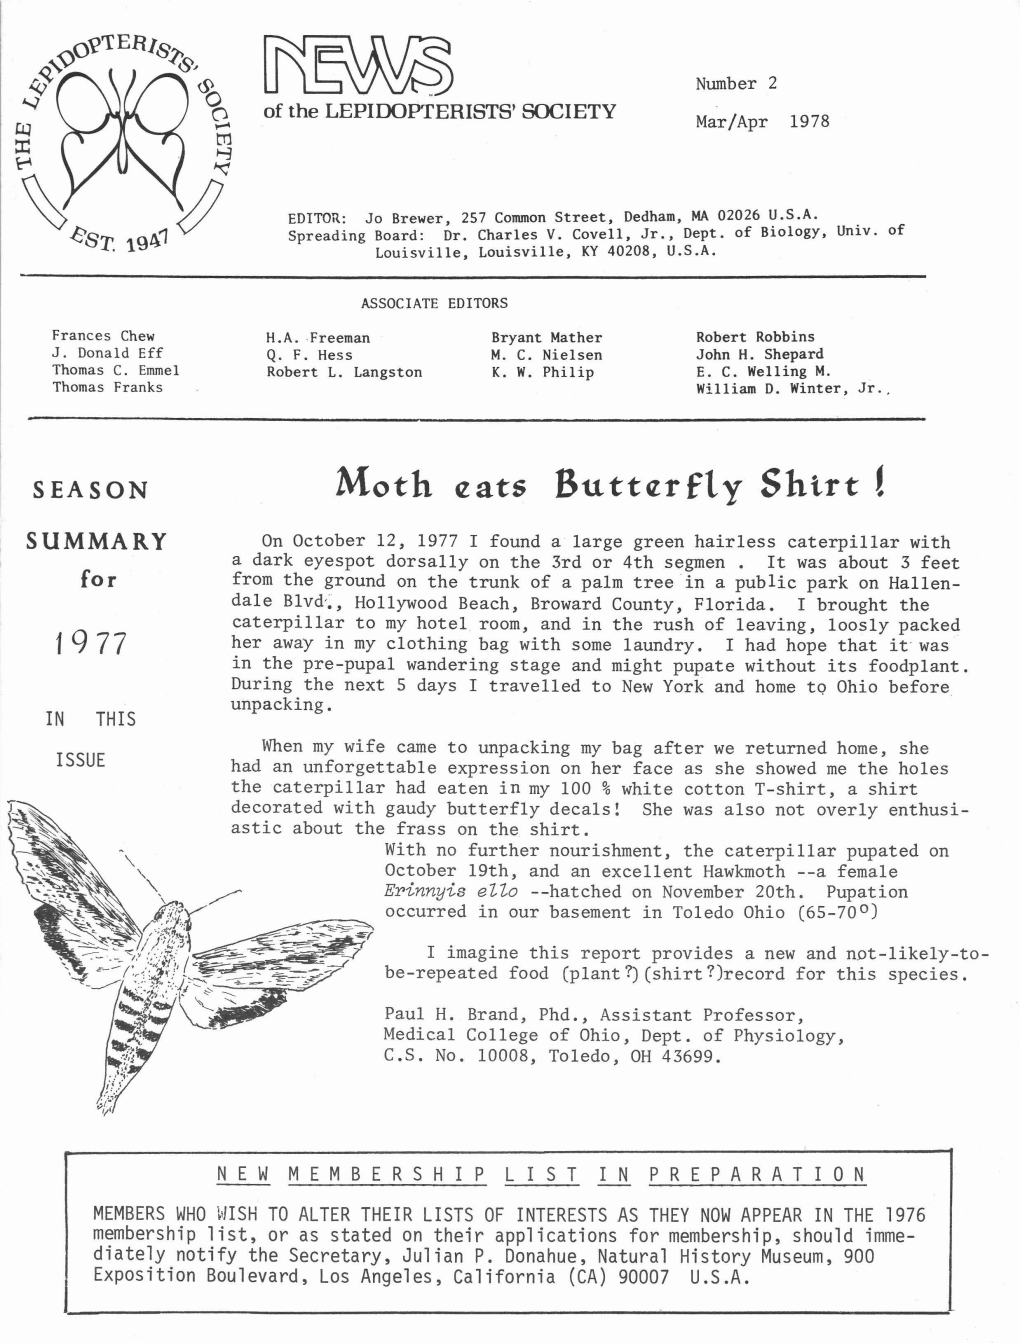 Moth Eats Buttczrfty Shirt!